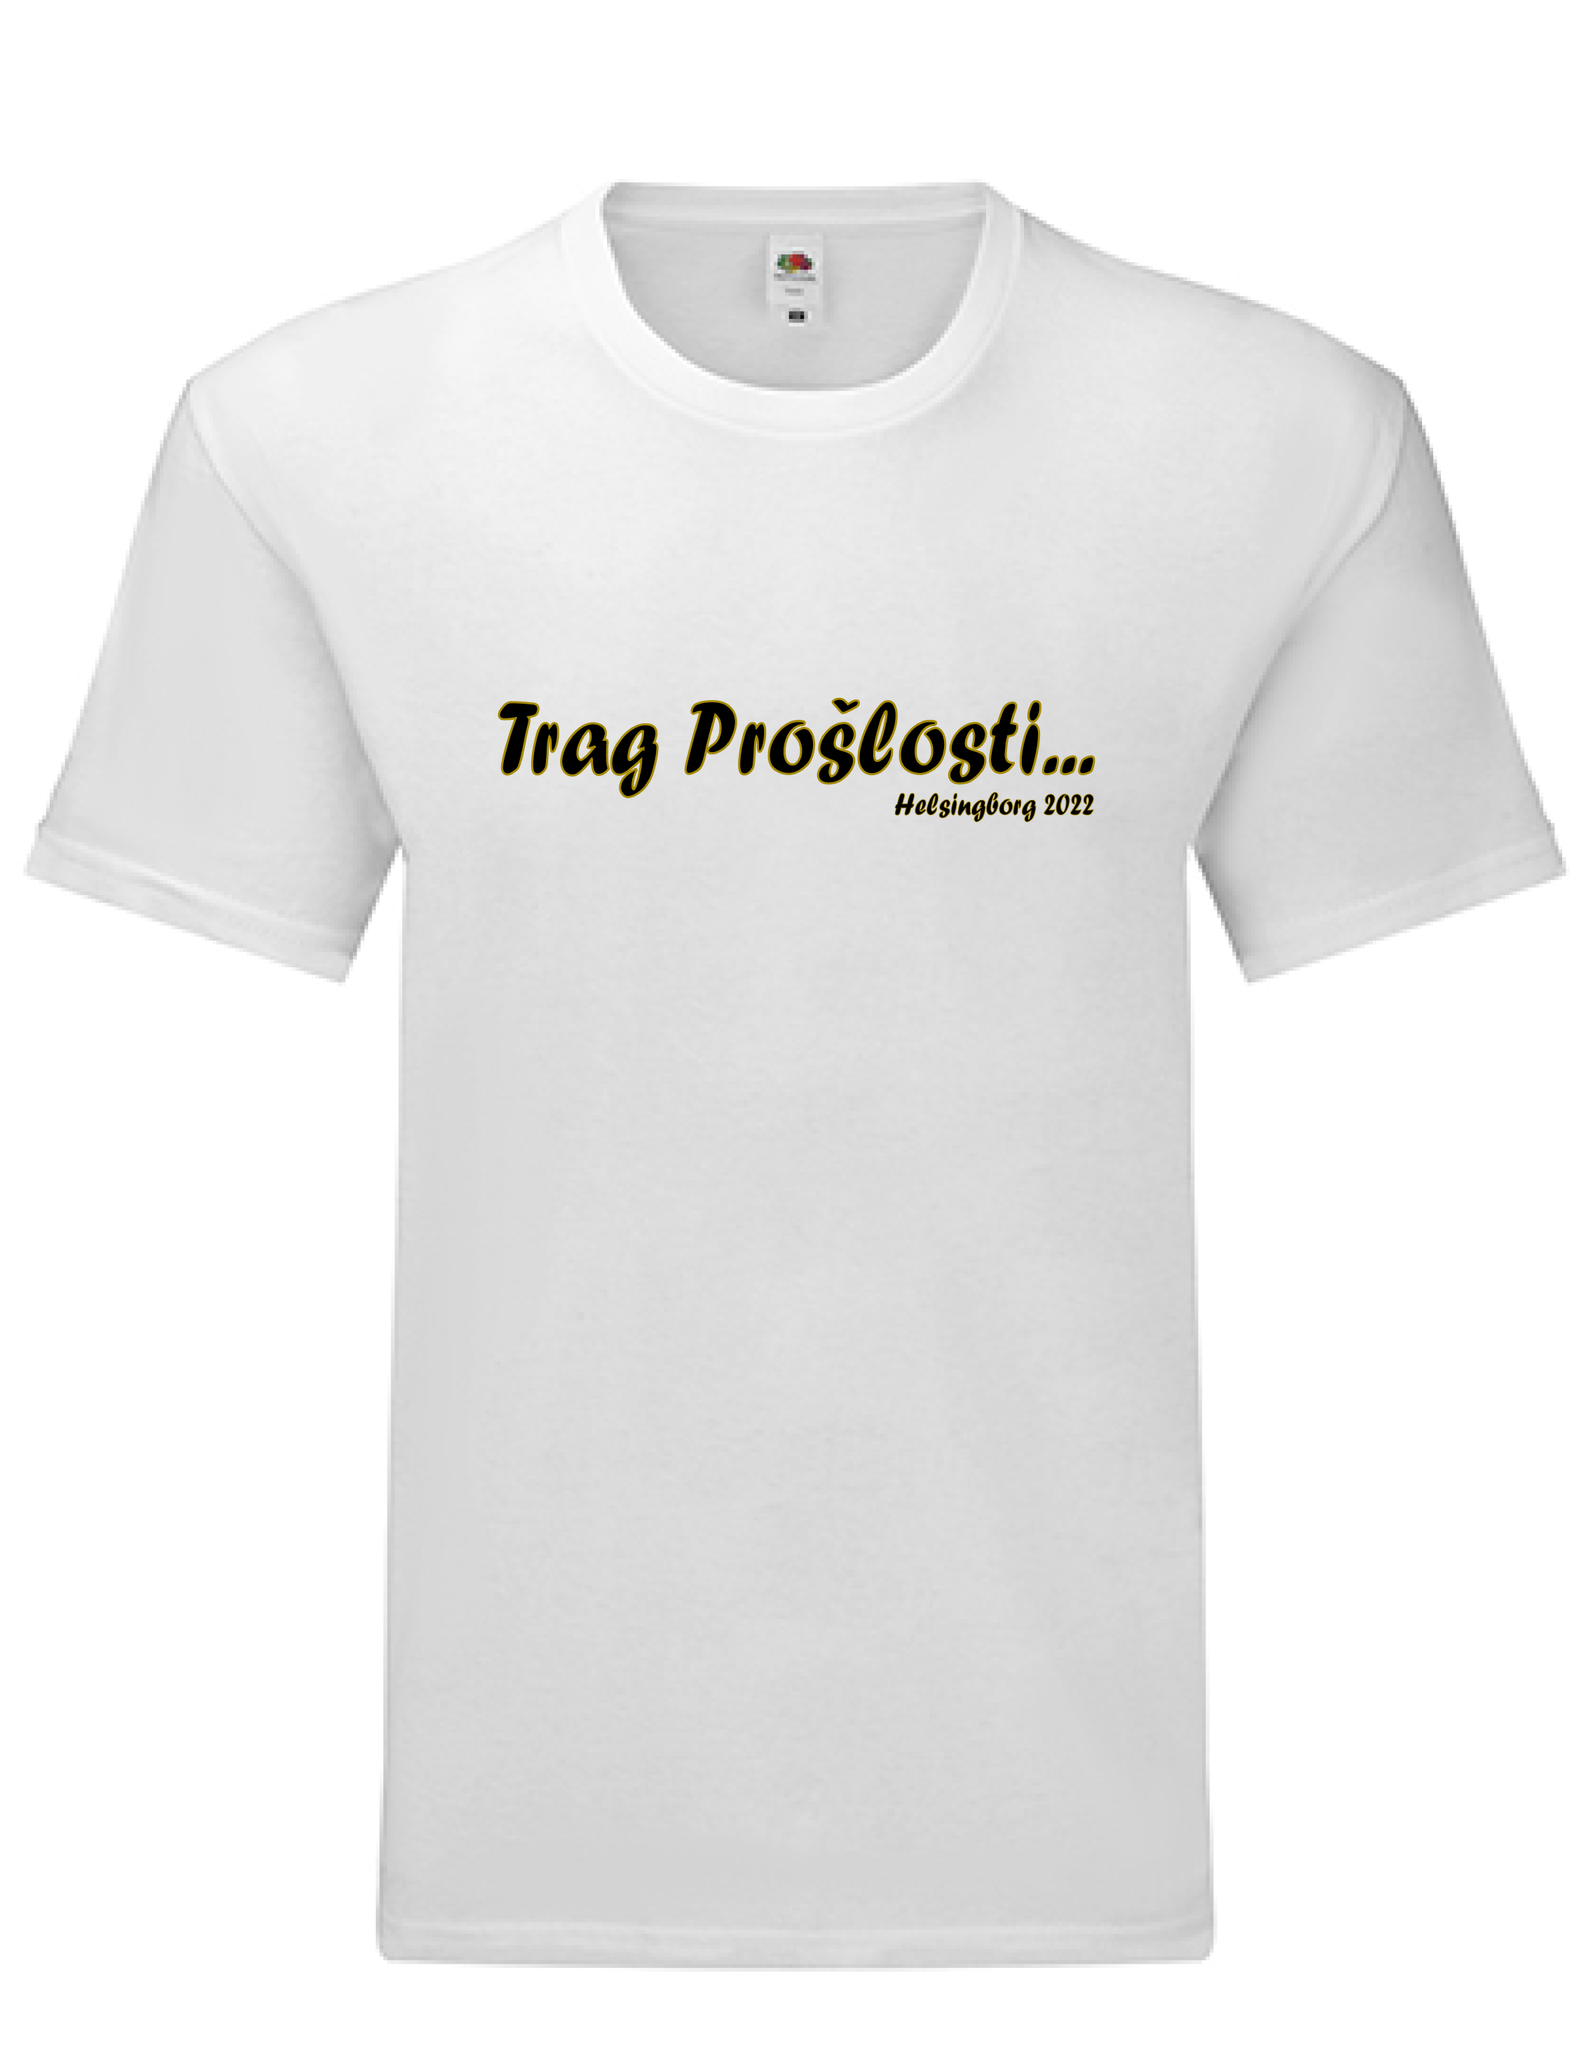 T-shirt Trag proslosti